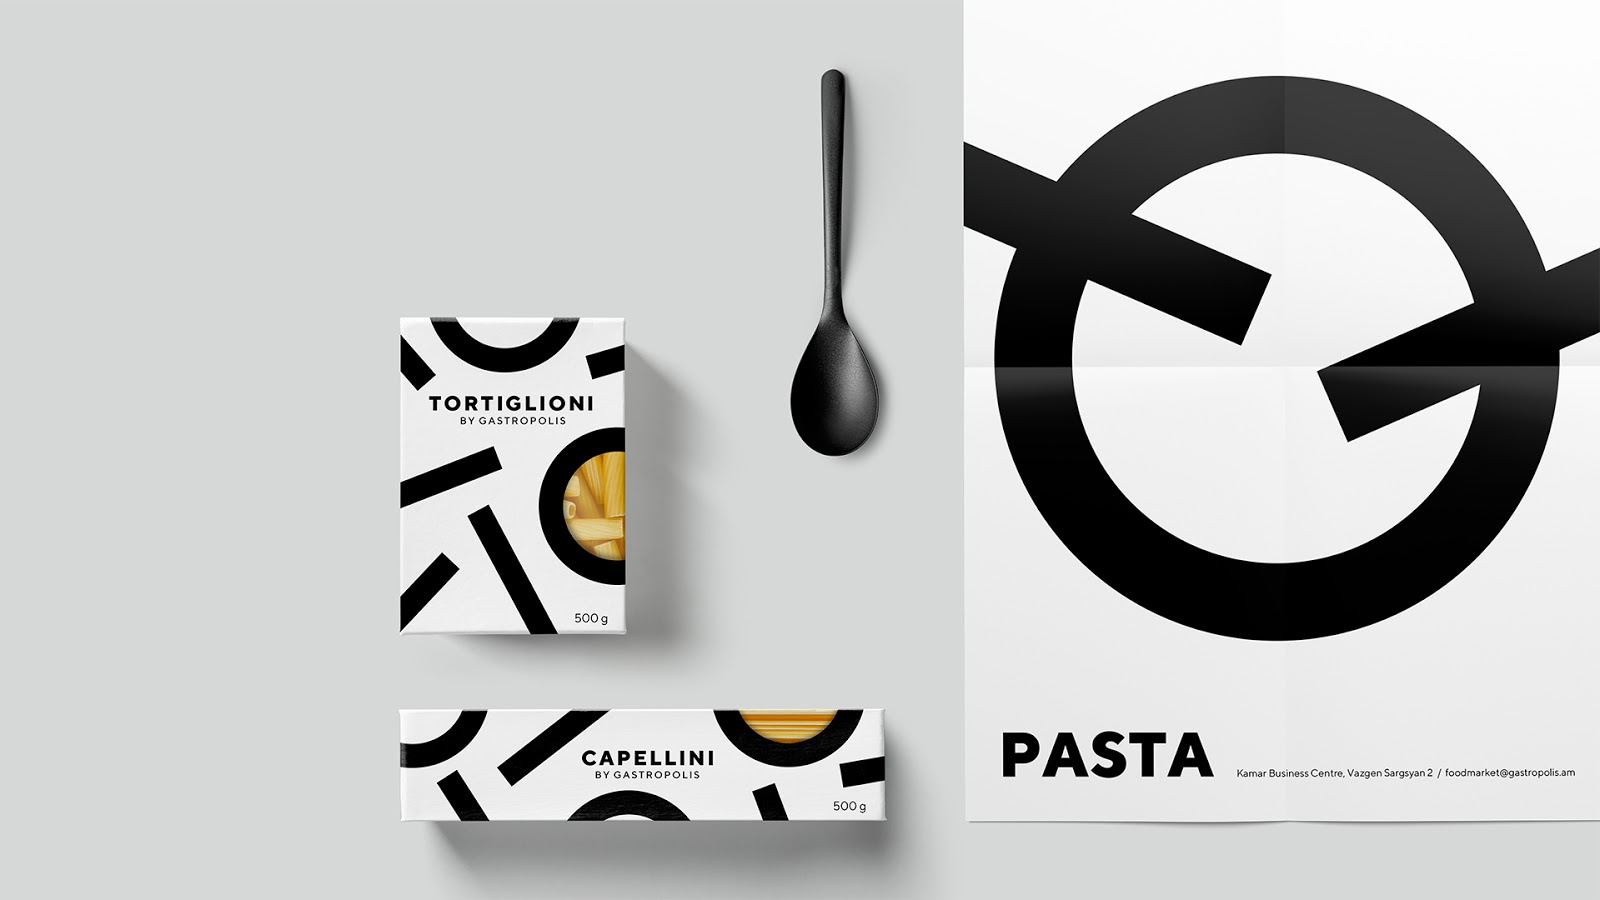 快餐简餐甜品面包咖啡西安爱游戏全站官网登录
品牌策划包装设计VI设计logo设计